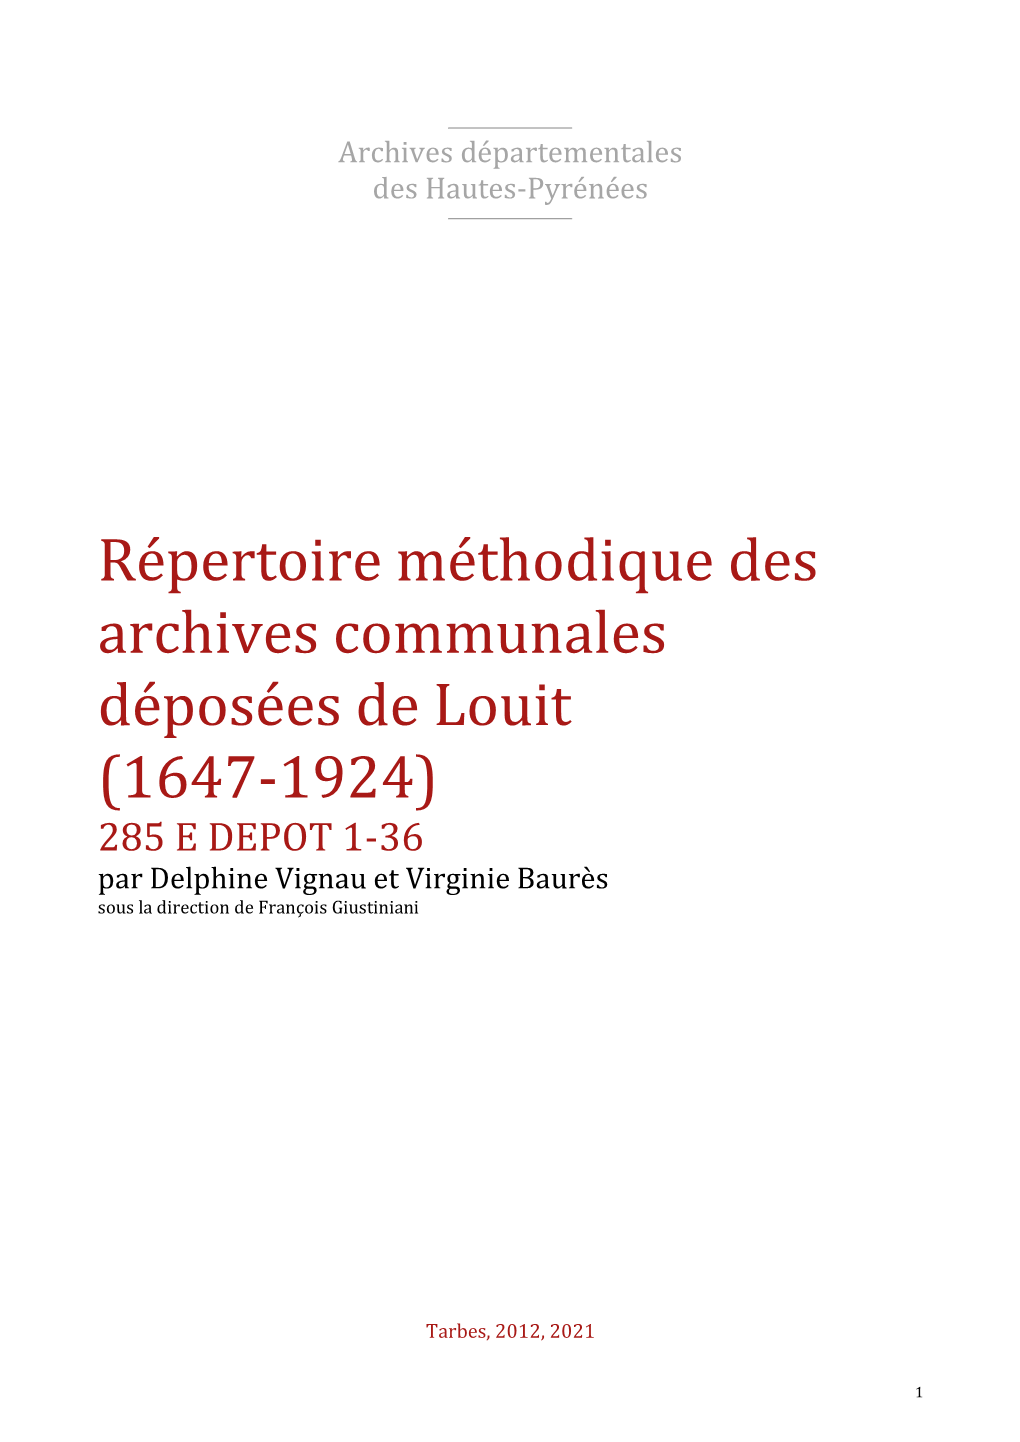 Répertoire Des Archives Déposées De Louit